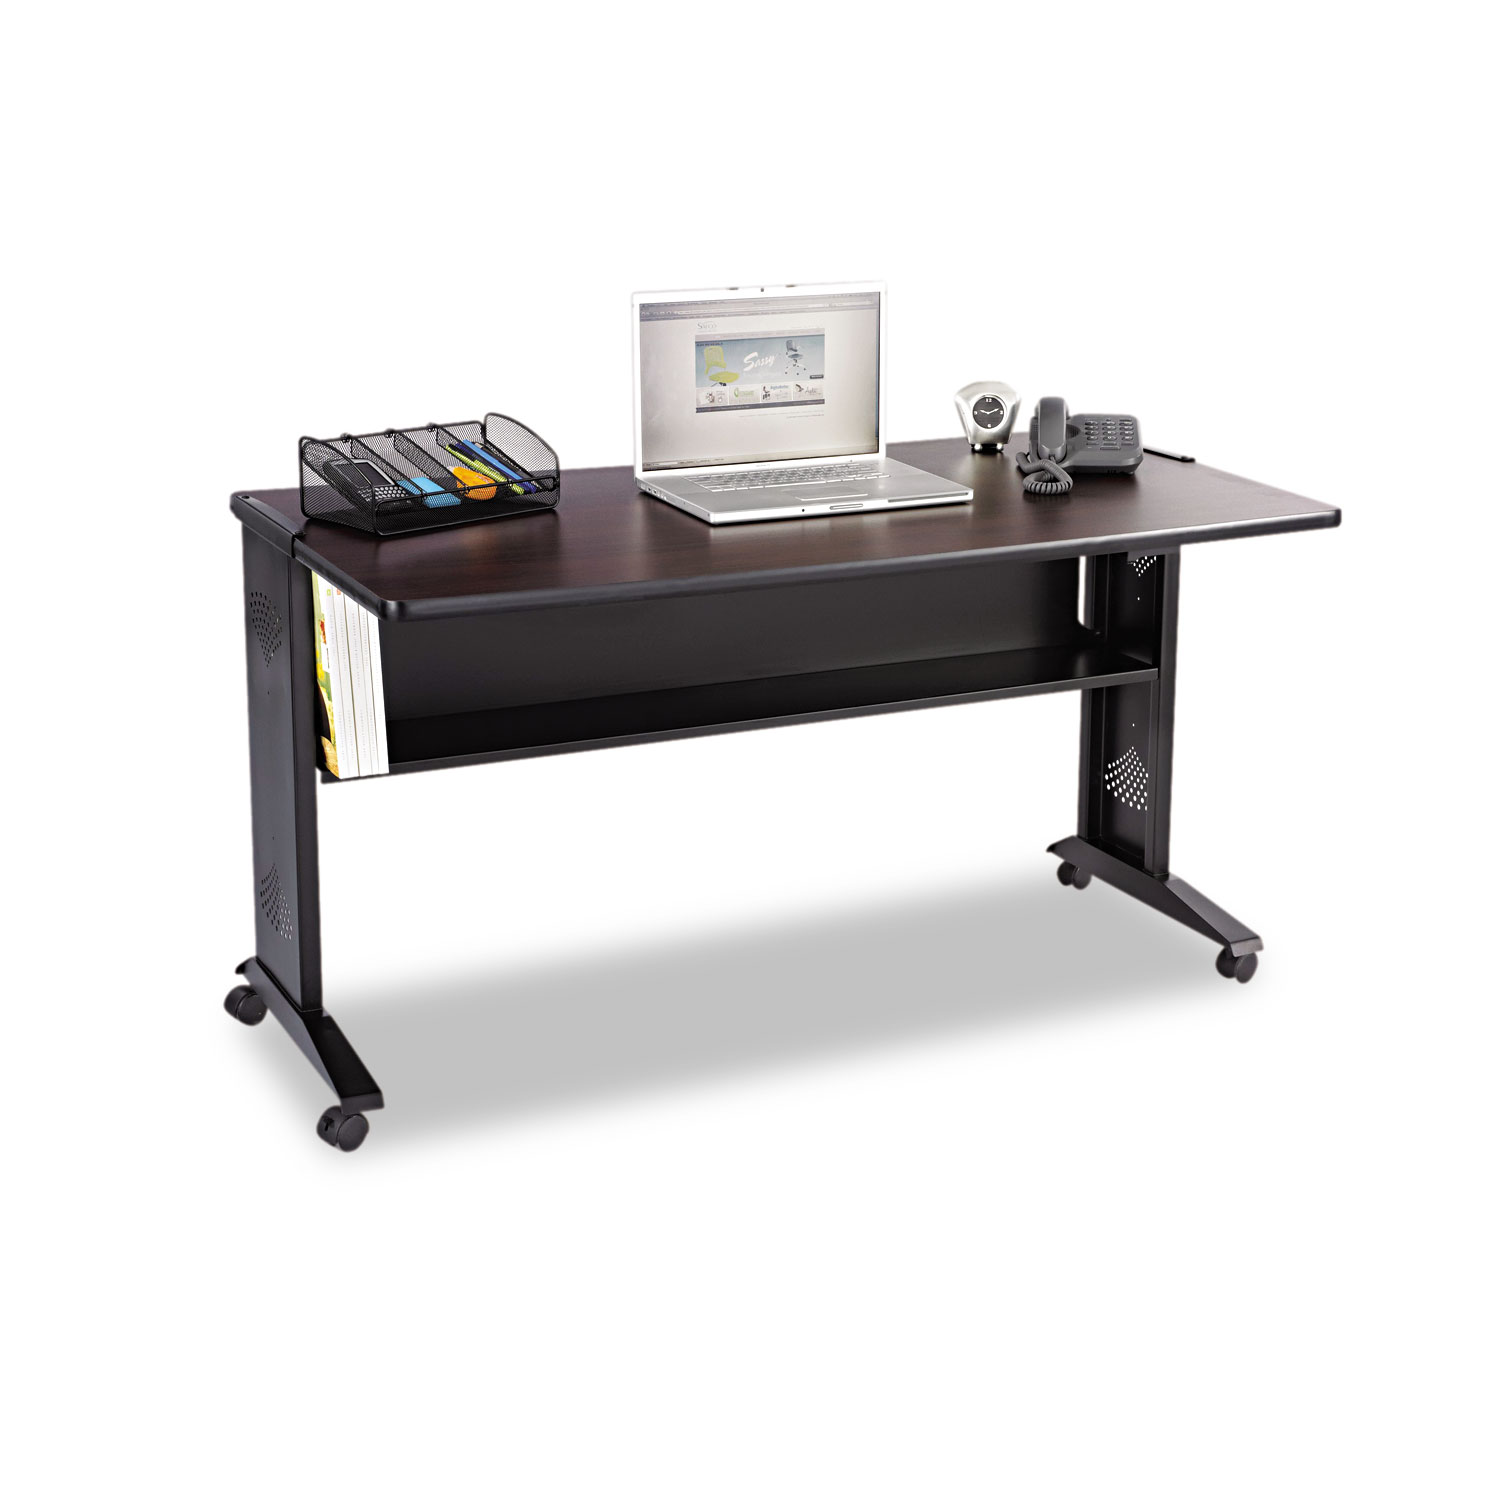 Mobile Computer Desk W/Reversible Top, 53.5 x 28 x 30, Mahogany/Medium Oak/Black